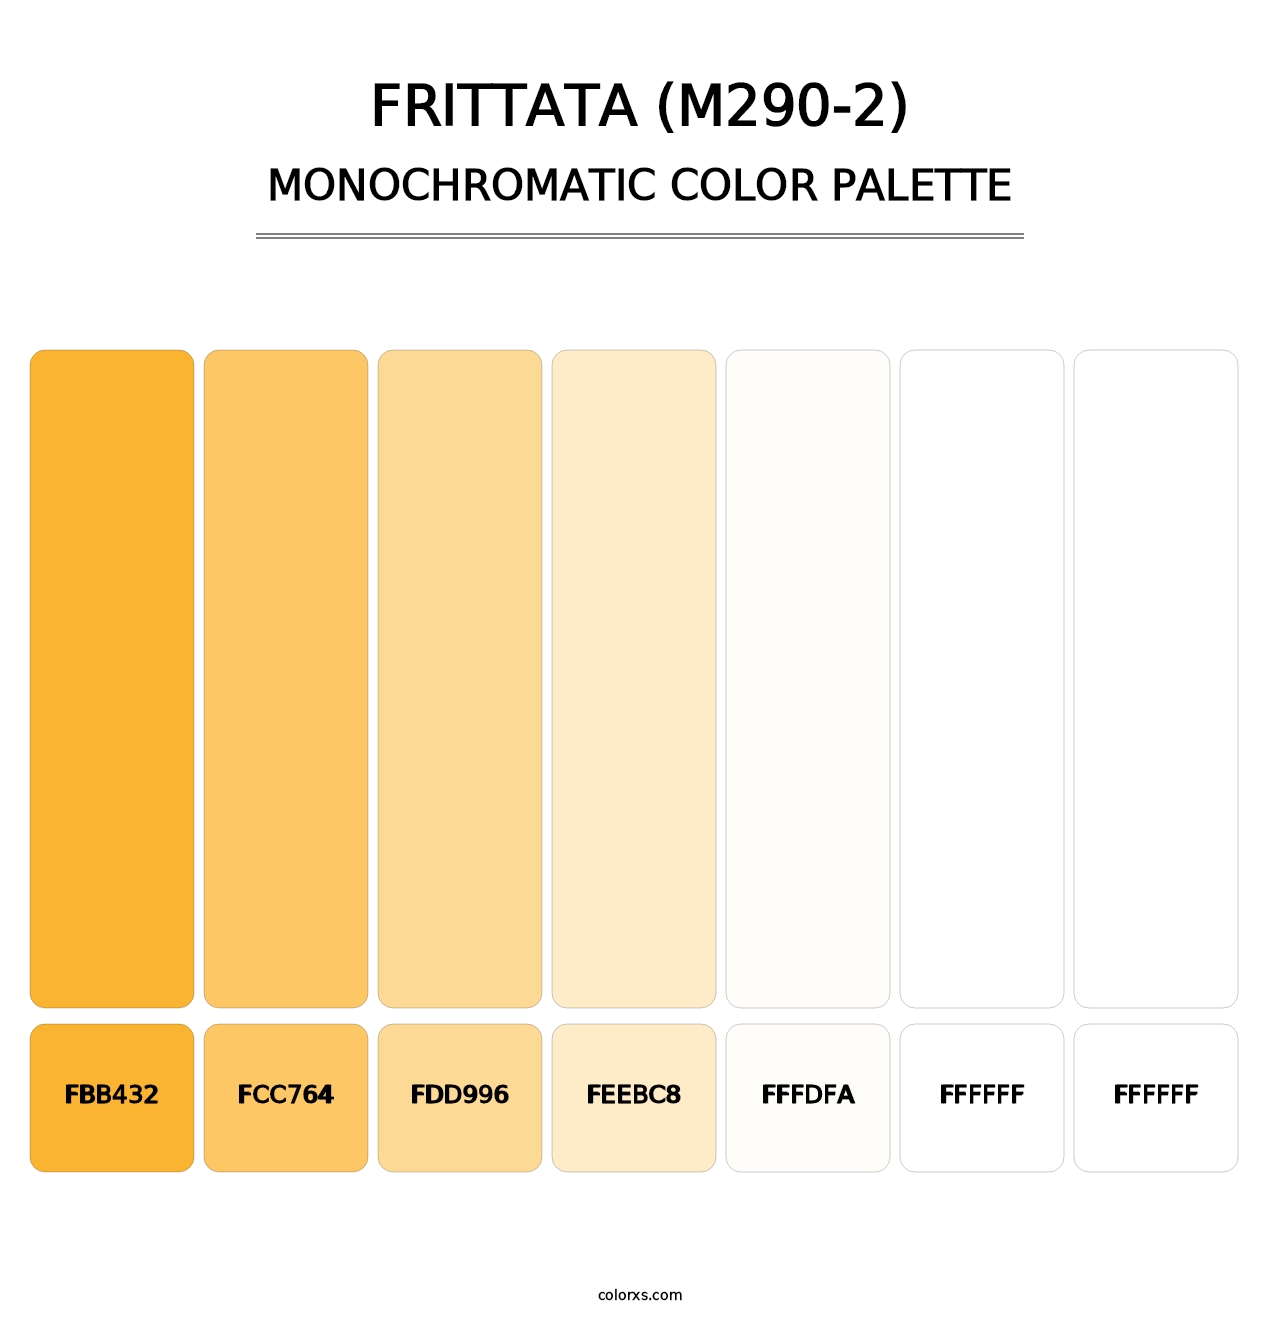 Frittata (M290-2) - Monochromatic Color Palette